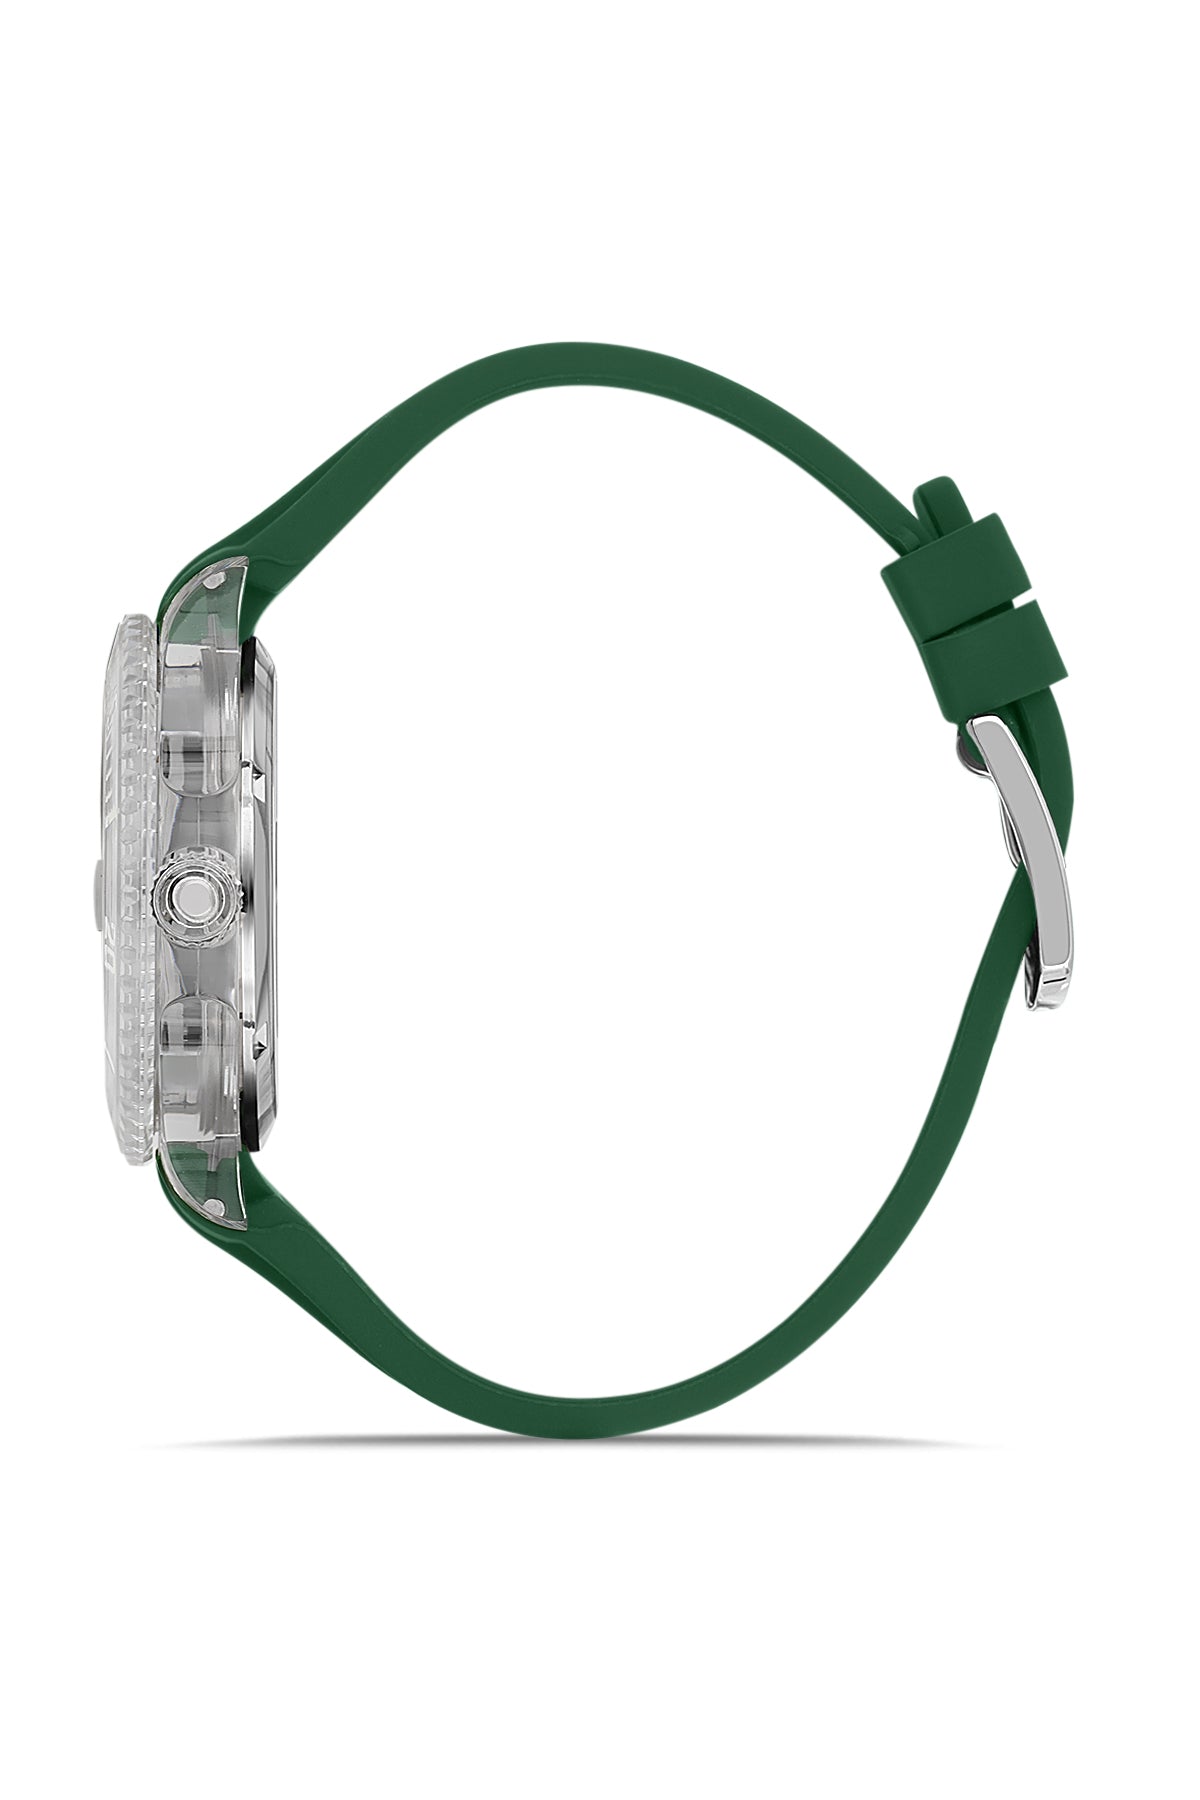 DAVID GUNER Yeşil Kadranlı Beyaz Kaplamalı Unisex Kol Saati